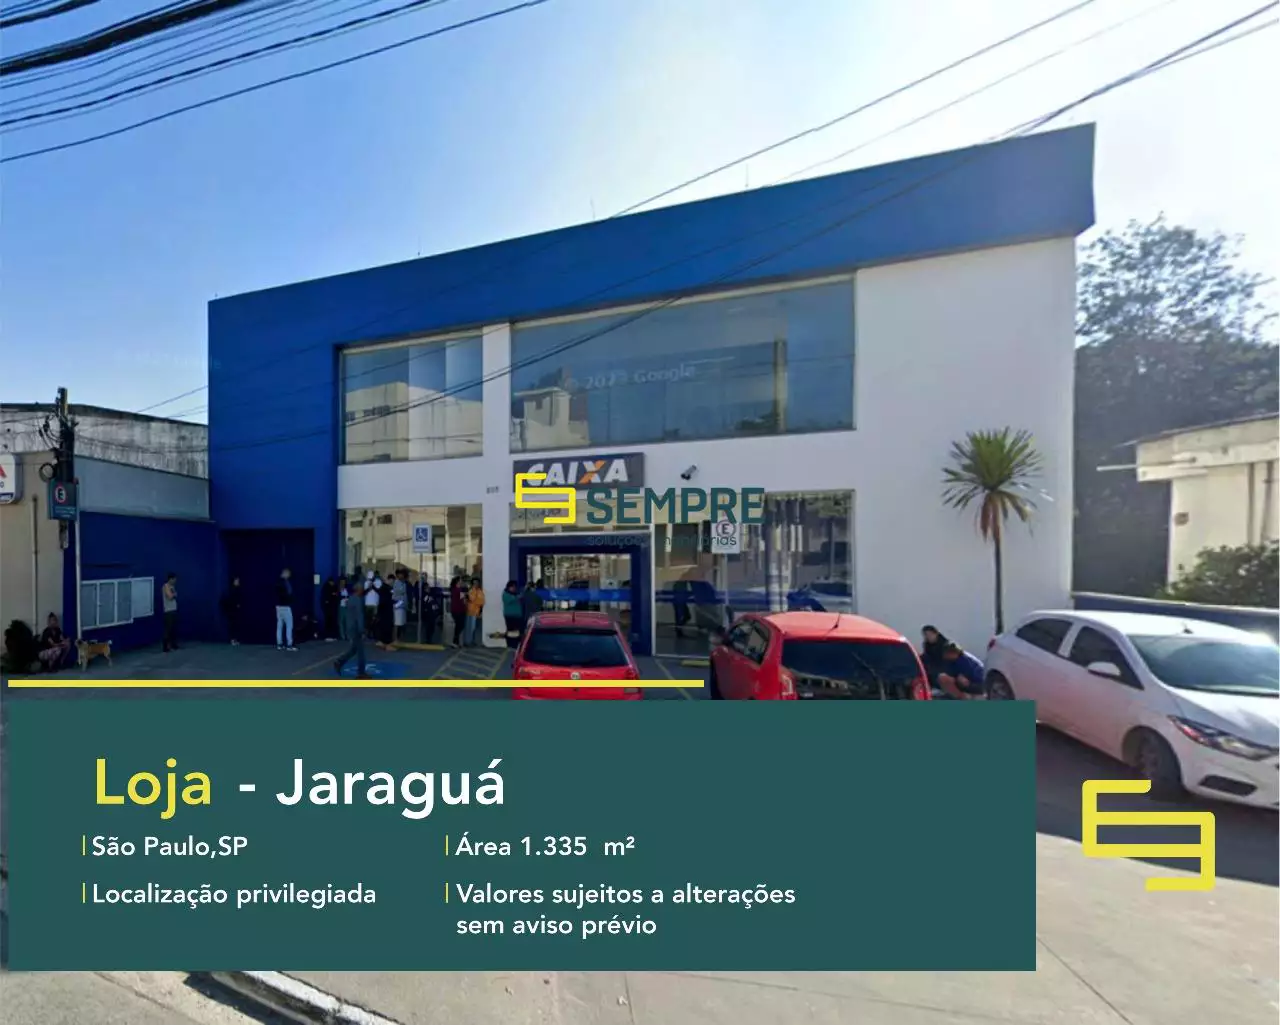 Loja para alugar Jardim São João (Jaraguá) em São Paulo, em excelente localização. O estabelecimento comercial conta com área de 1.335,51 m².